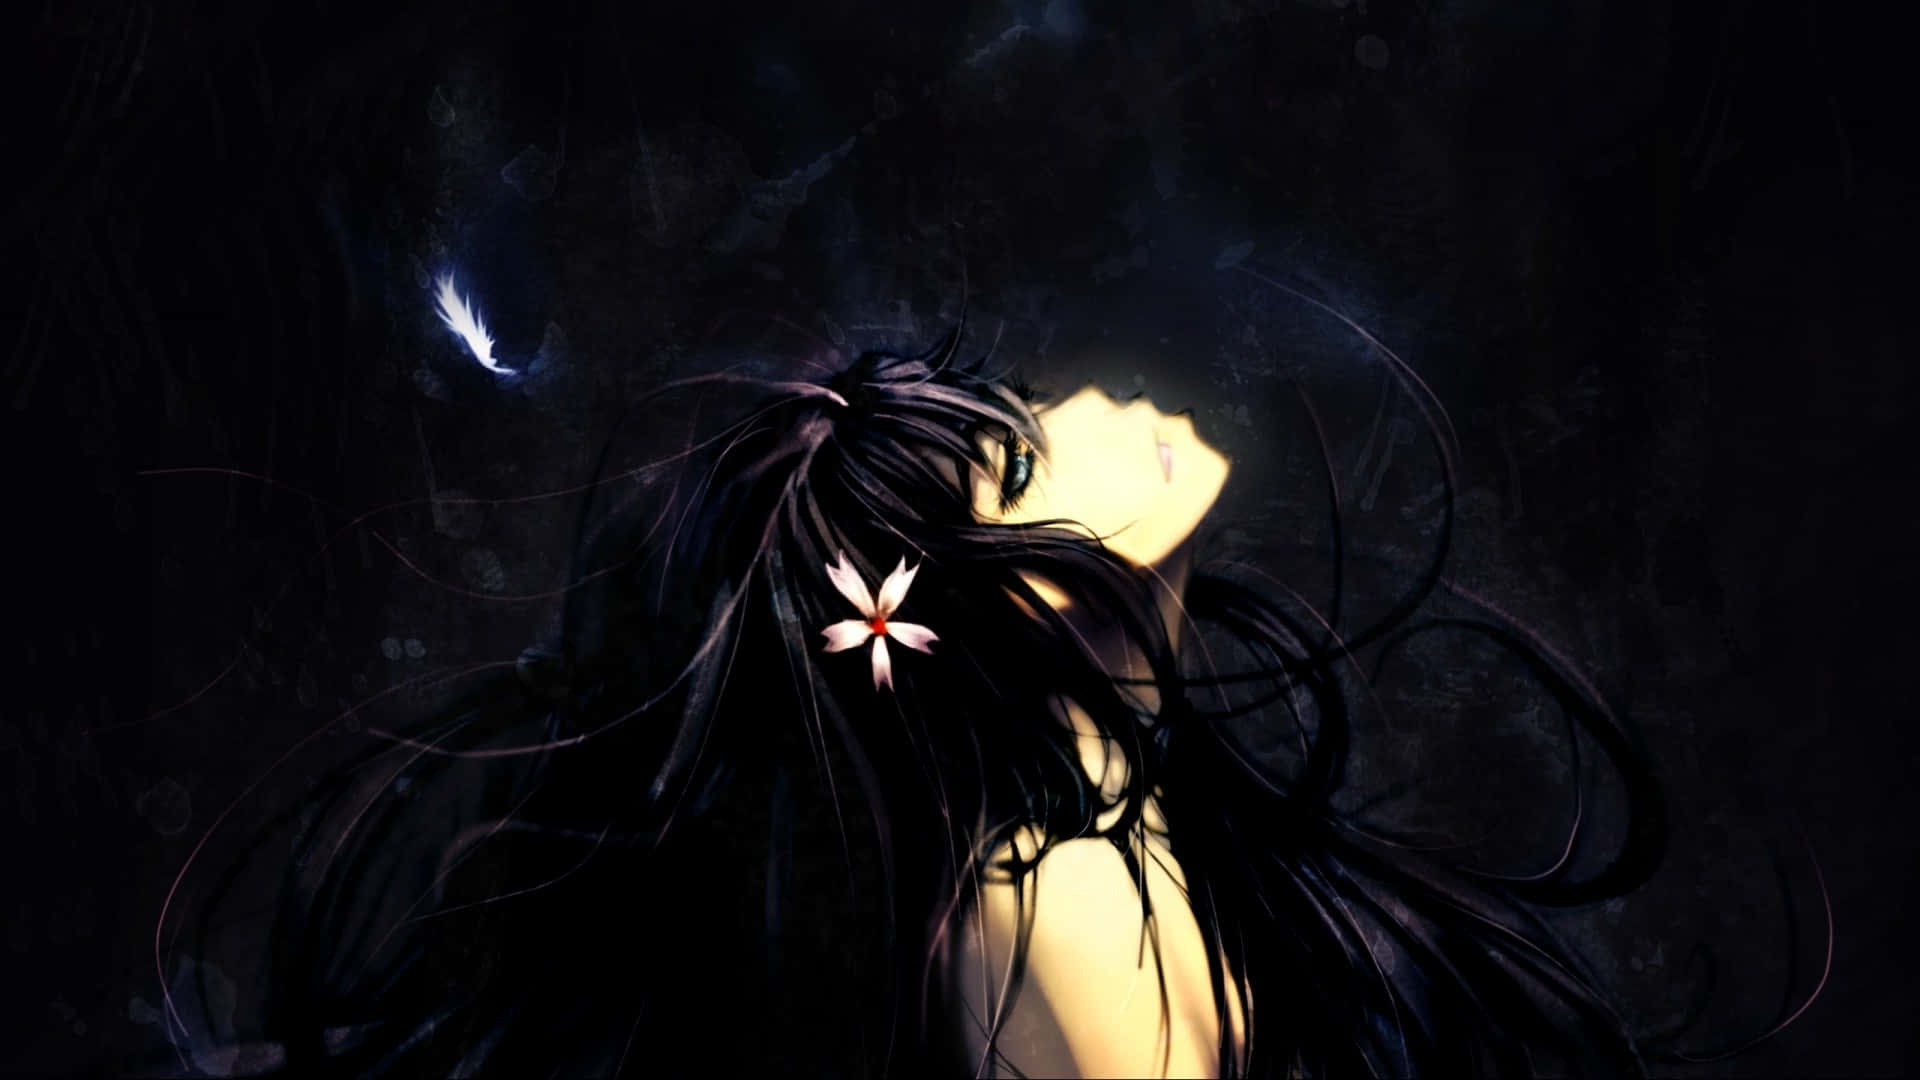 Misteriosachica De Anime Oscura Contemplando Lo Desconocido. Fondo de pantalla